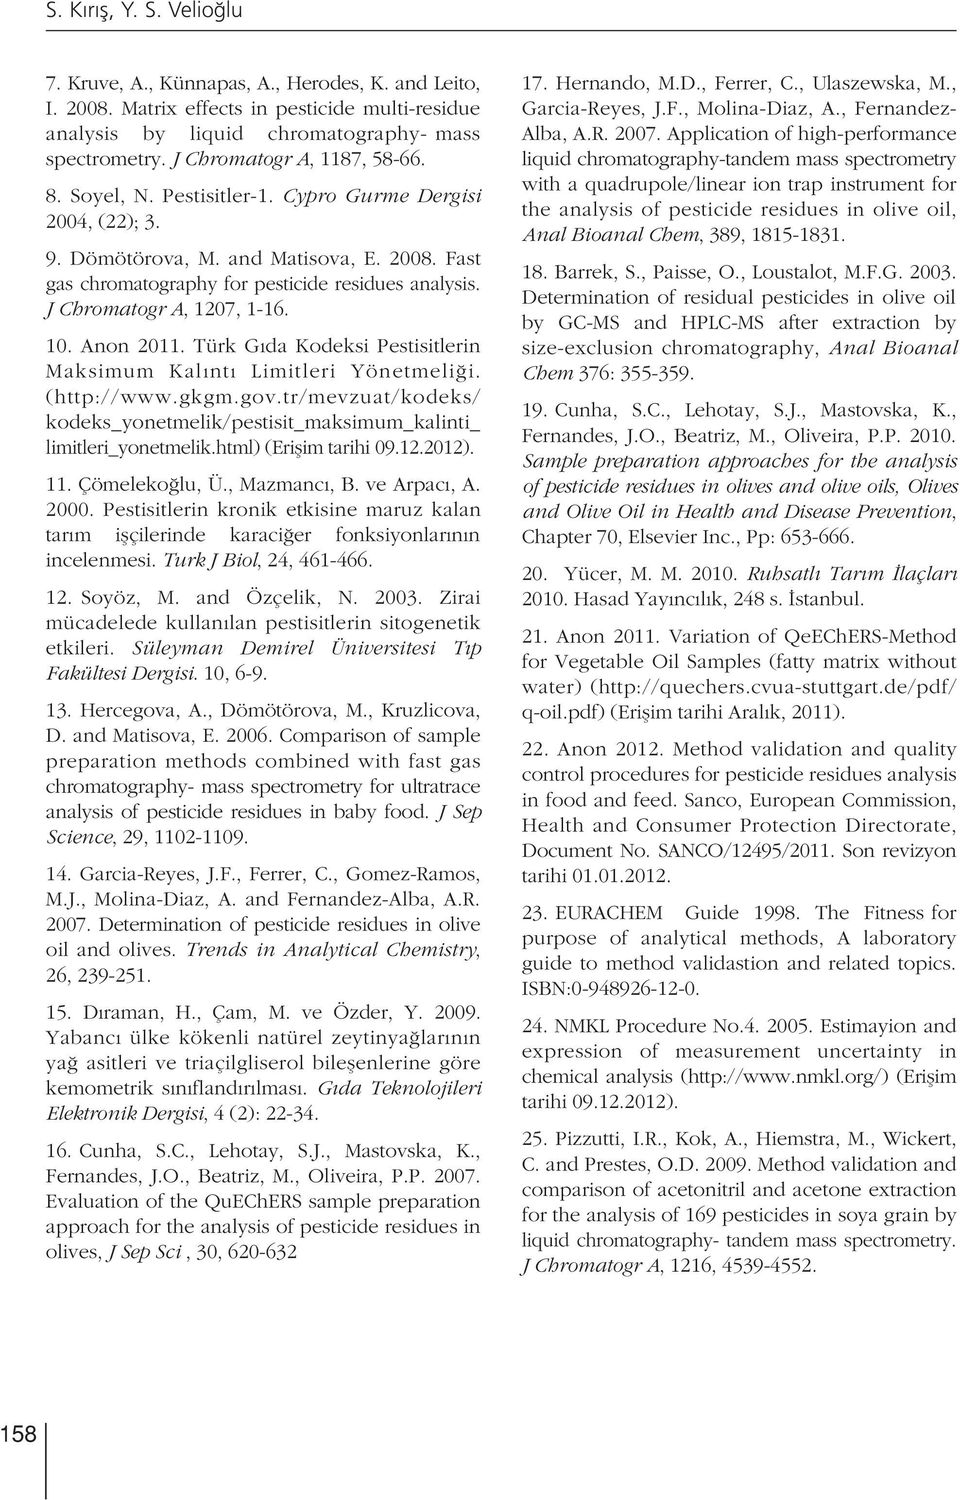 J Chromatogr A, 1207, 1-16. 10. Anon 2011. Türk G da Kodeksi Pestisitlerin Maksimum Kal nt Limitleri Yönetmeli i. (http://www.gkgm.gov.